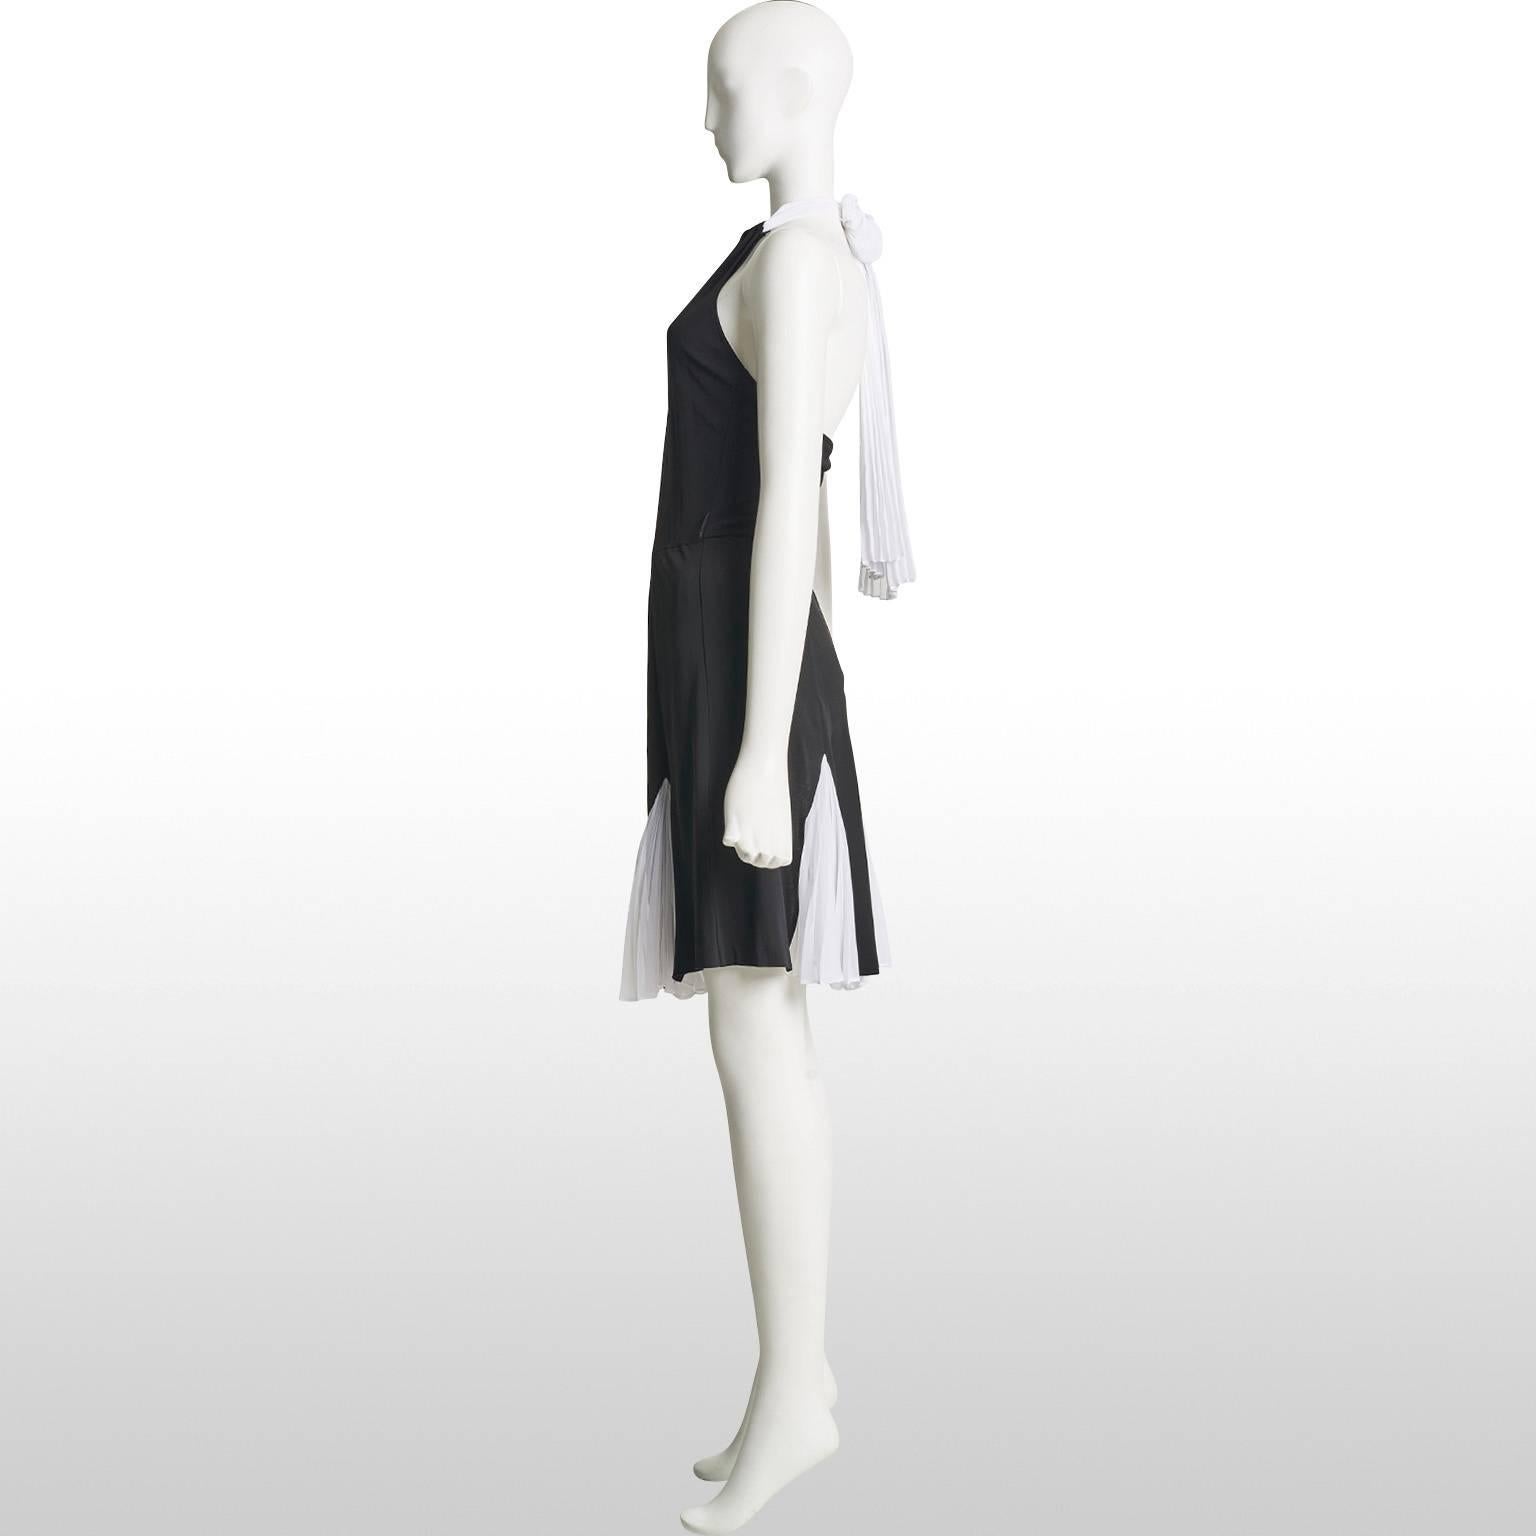  Diane Von Furstenberg Black and White Halter Neck Dress  In Excellent Condition For Sale In London, GB